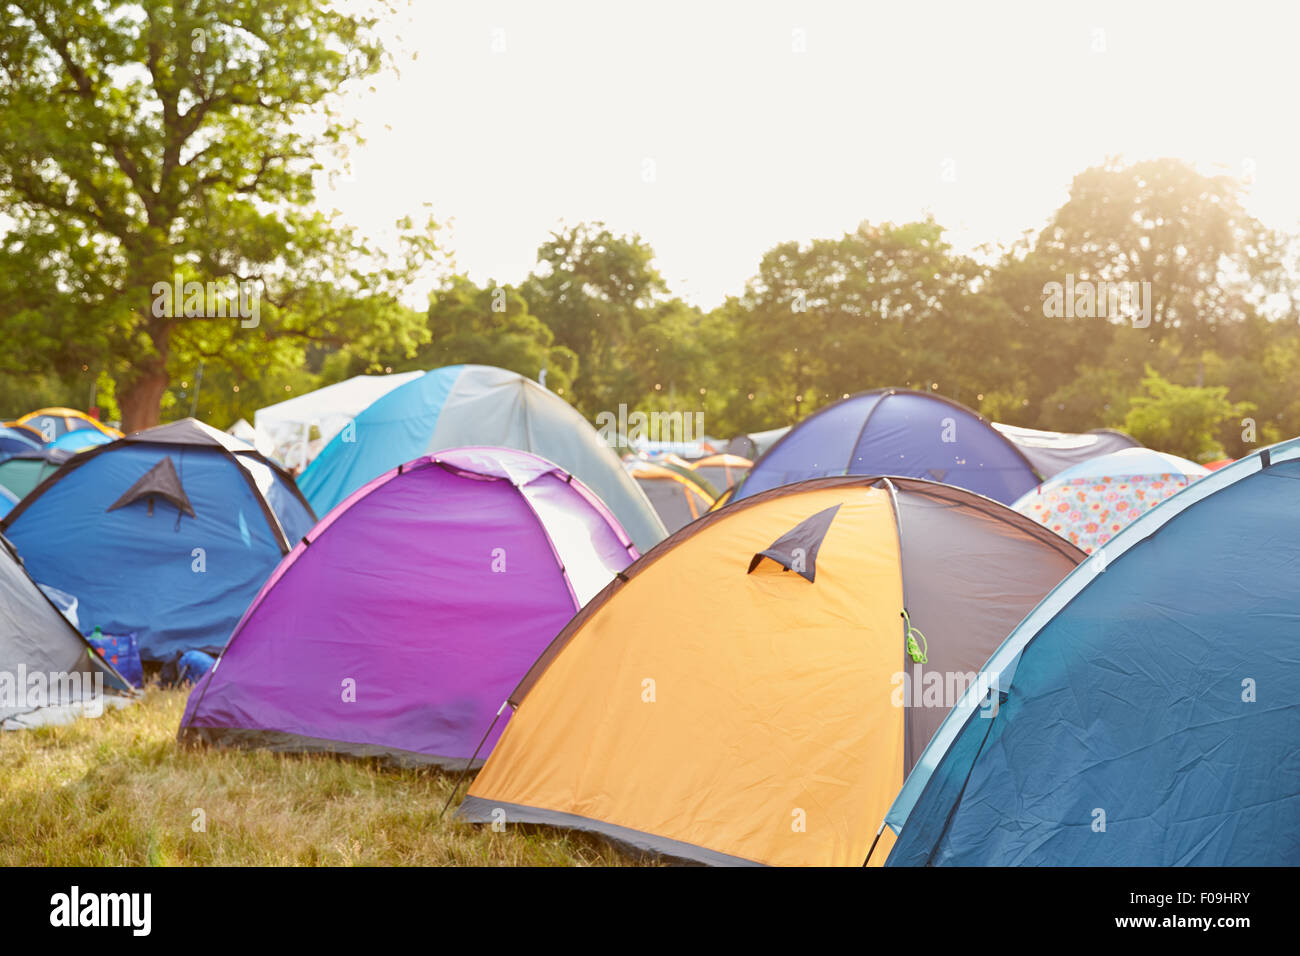 Zelten auf einem Musik-Festival-Campingplatz Stockfoto